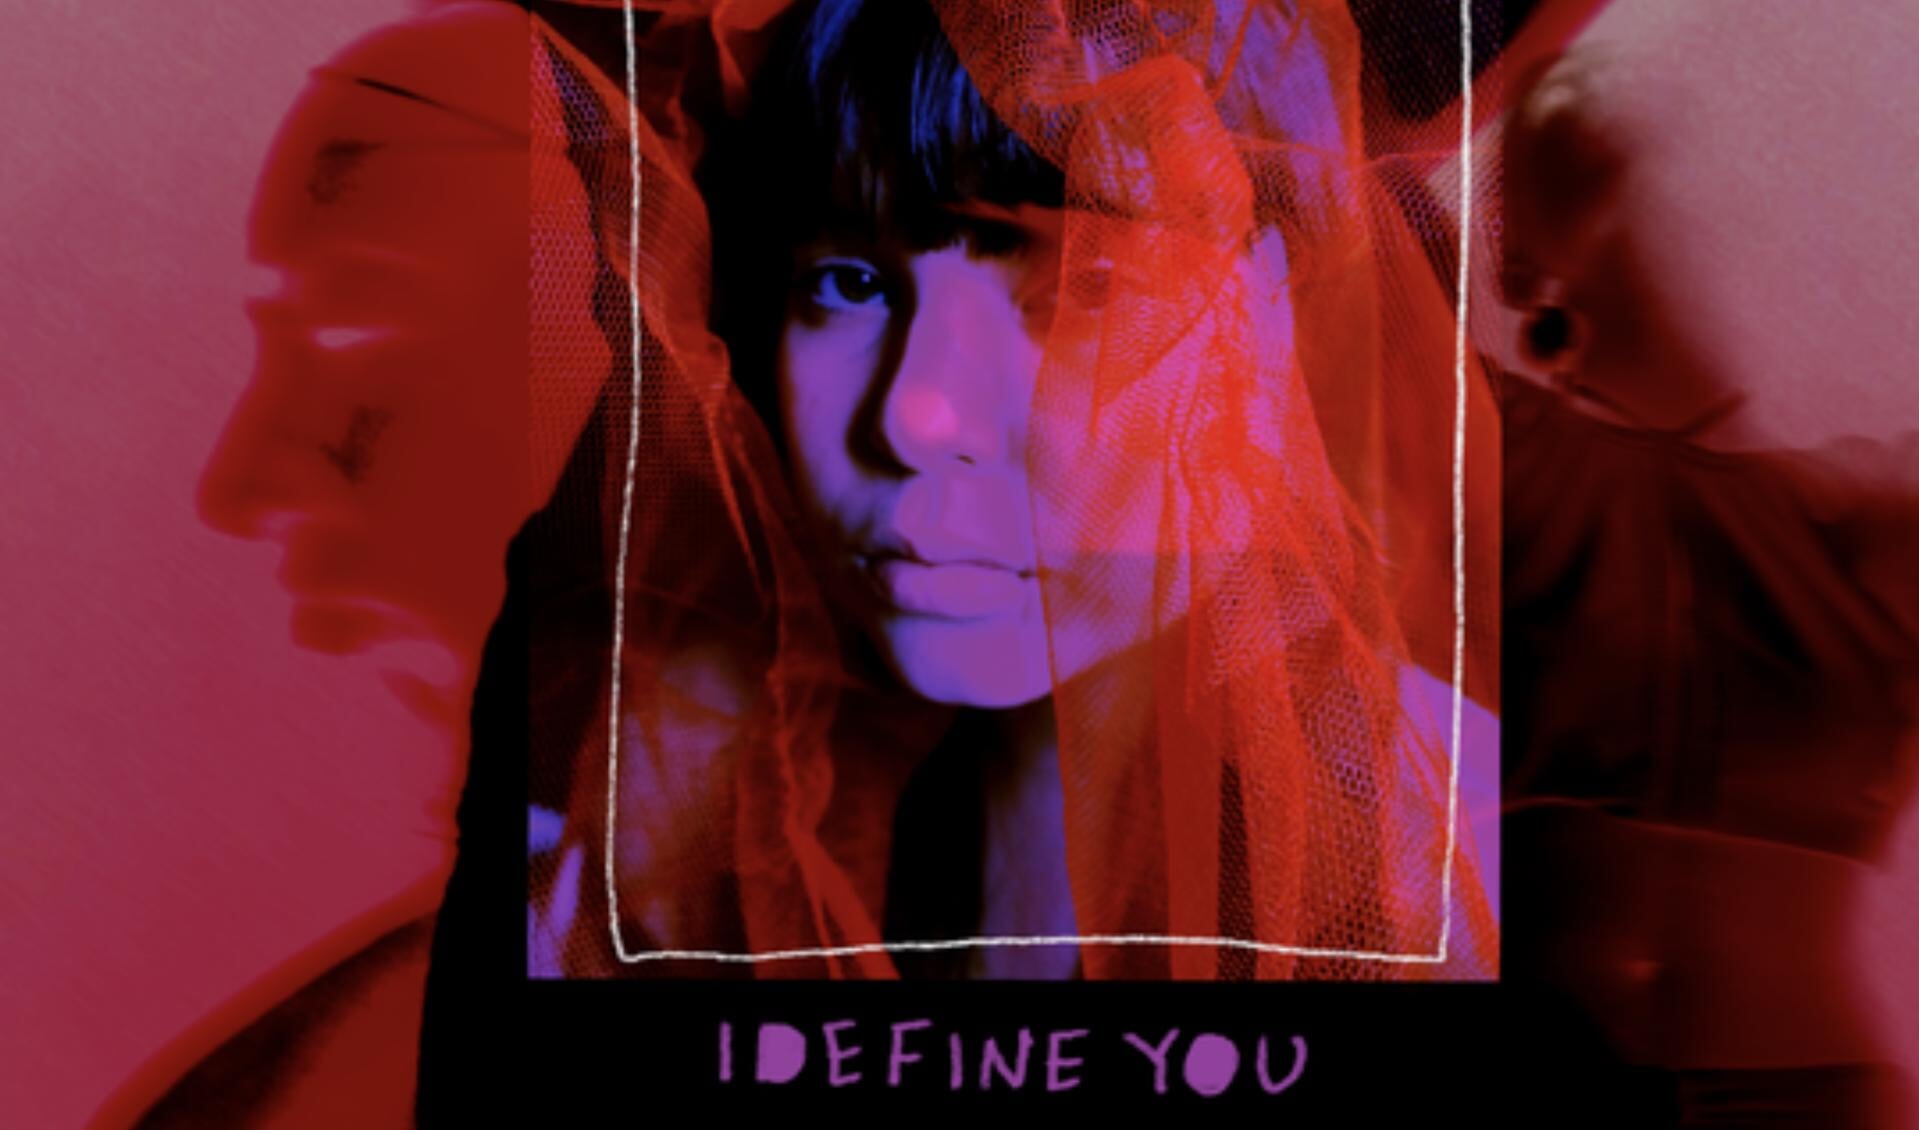 De voorstelling 'I define you' start op 24 april om 20:00 